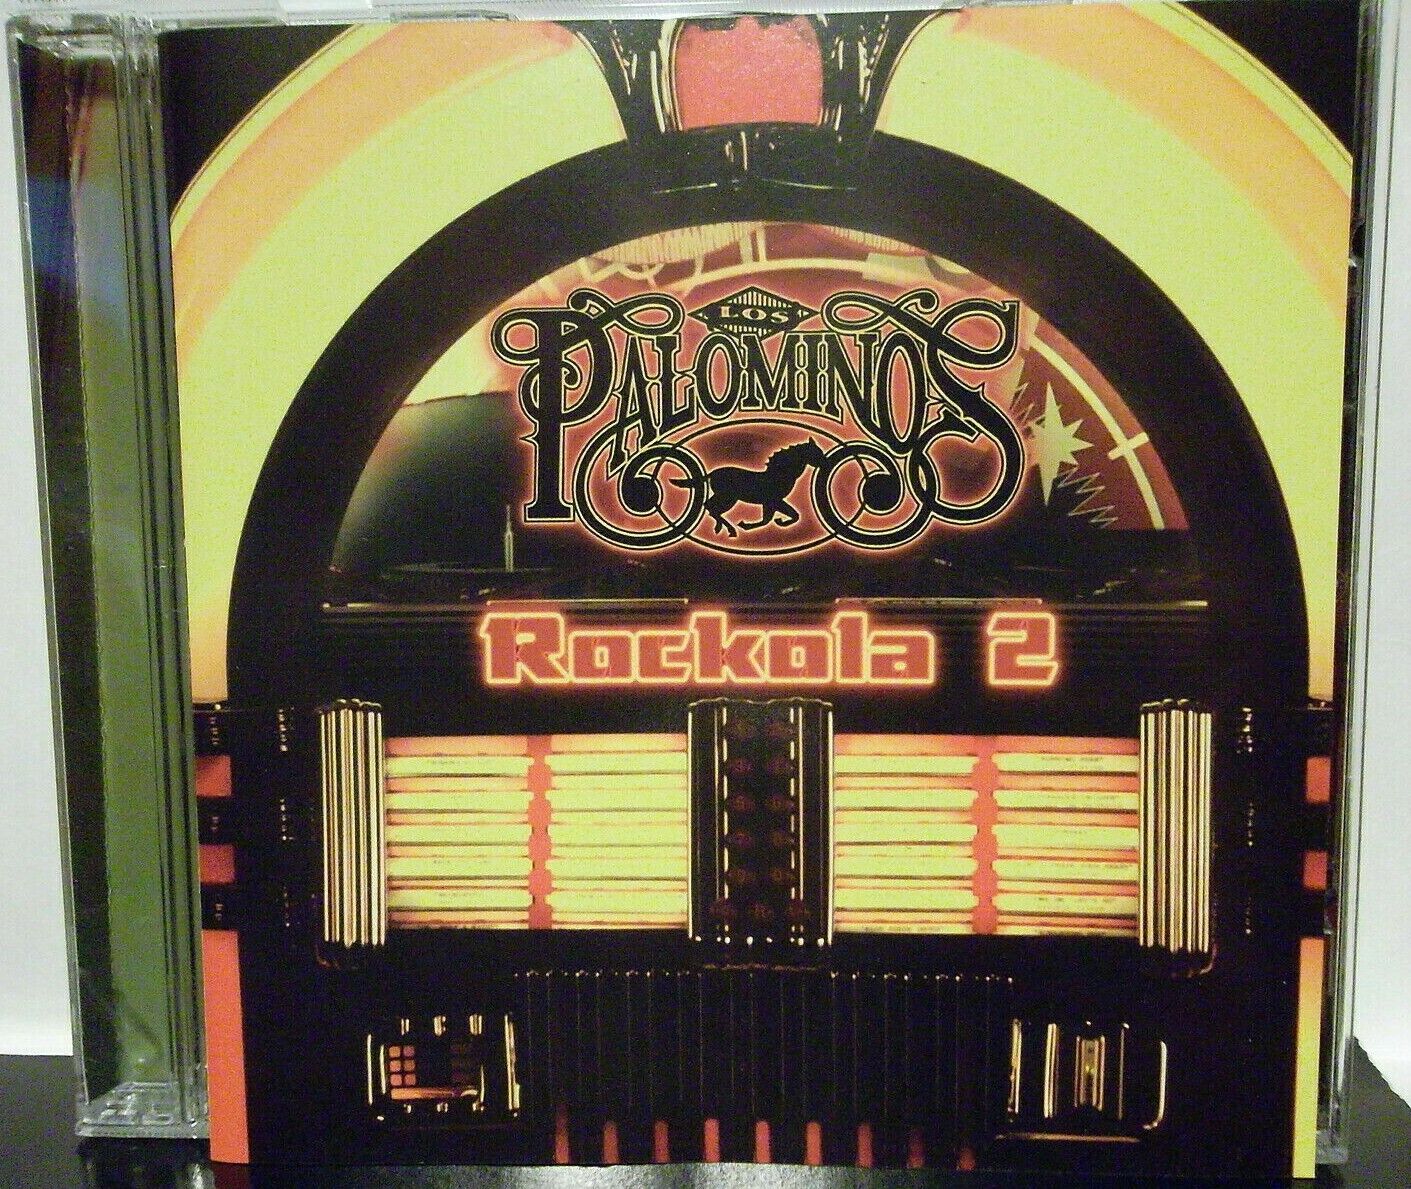 Rockola 2 by Los Palominos (CD, Oct-2009, Urbana Records)